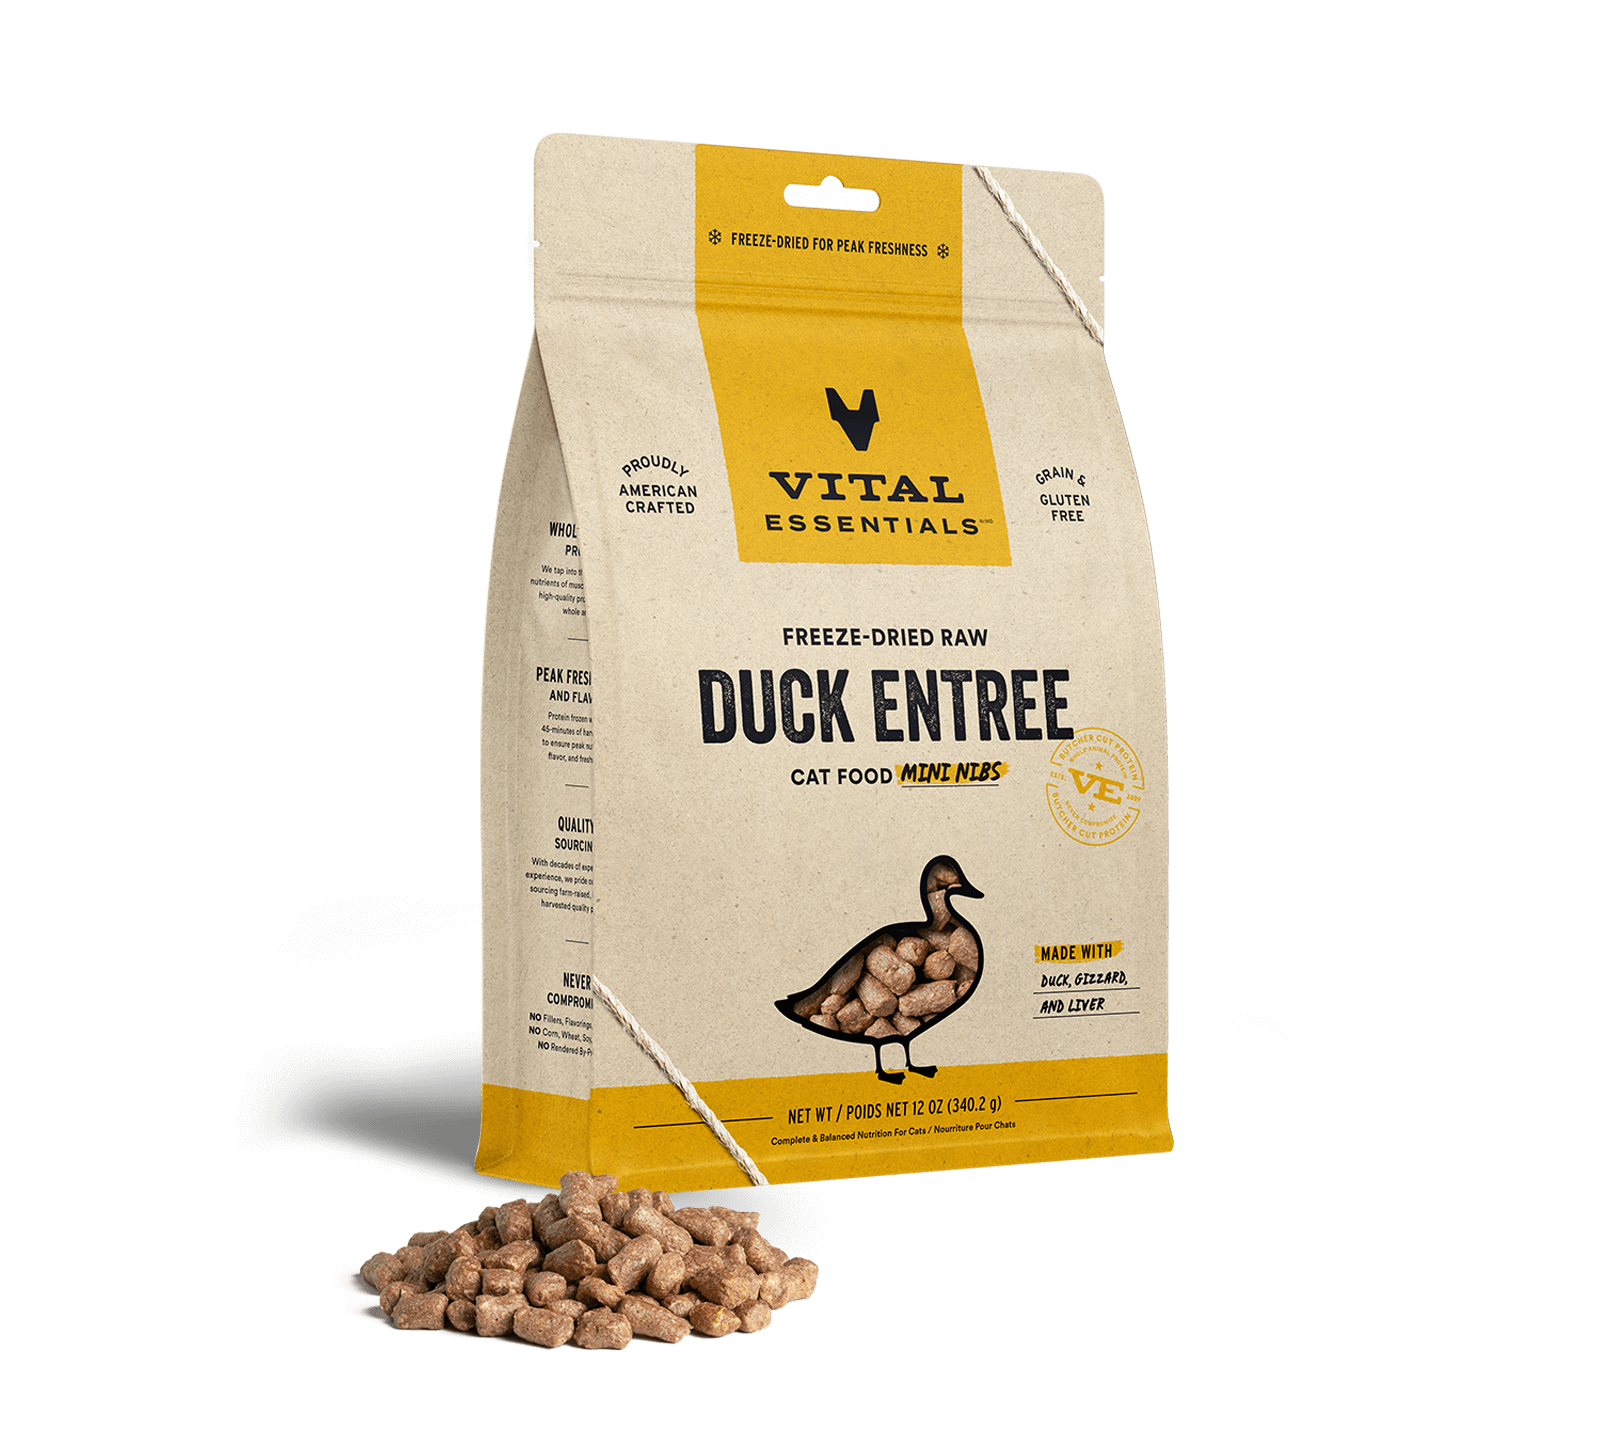 Vital Essentials Freeze-Dried Raw Duck Entree Cat Food Mini Nibs, 12 oz - Items on Sale Now